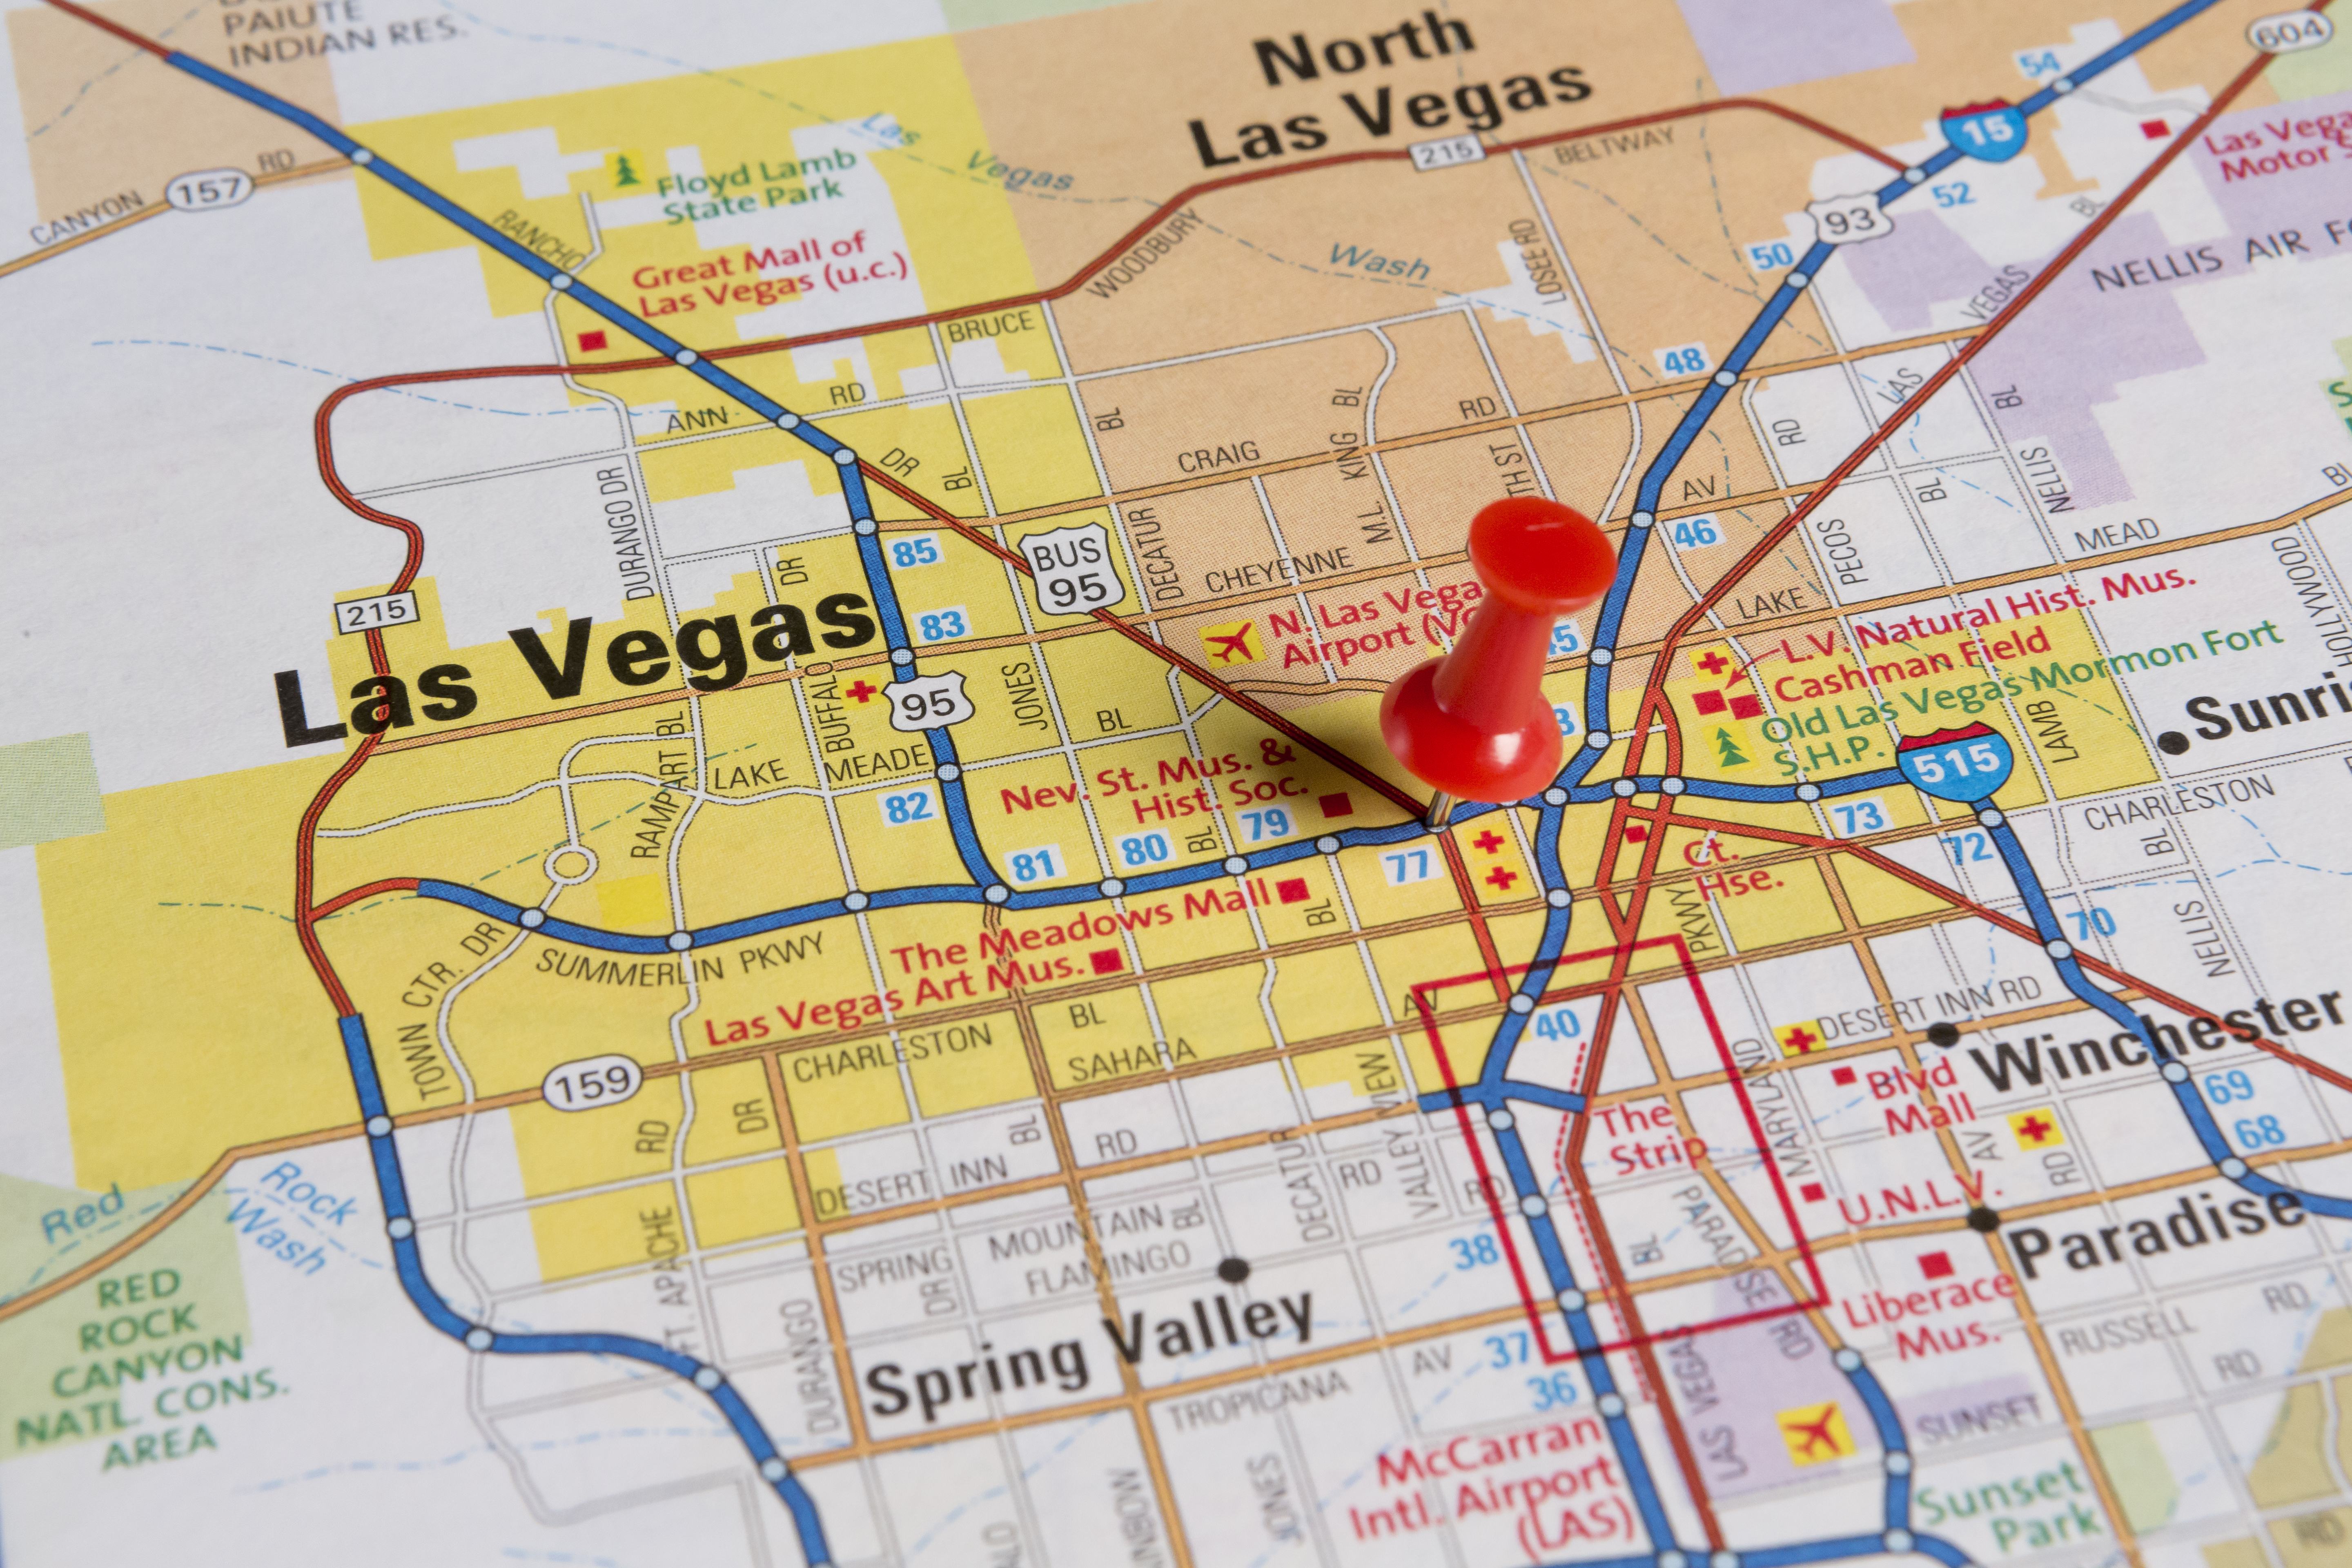 7 Tips for Relishing Las Vegas as Budget-Savvy Stoners